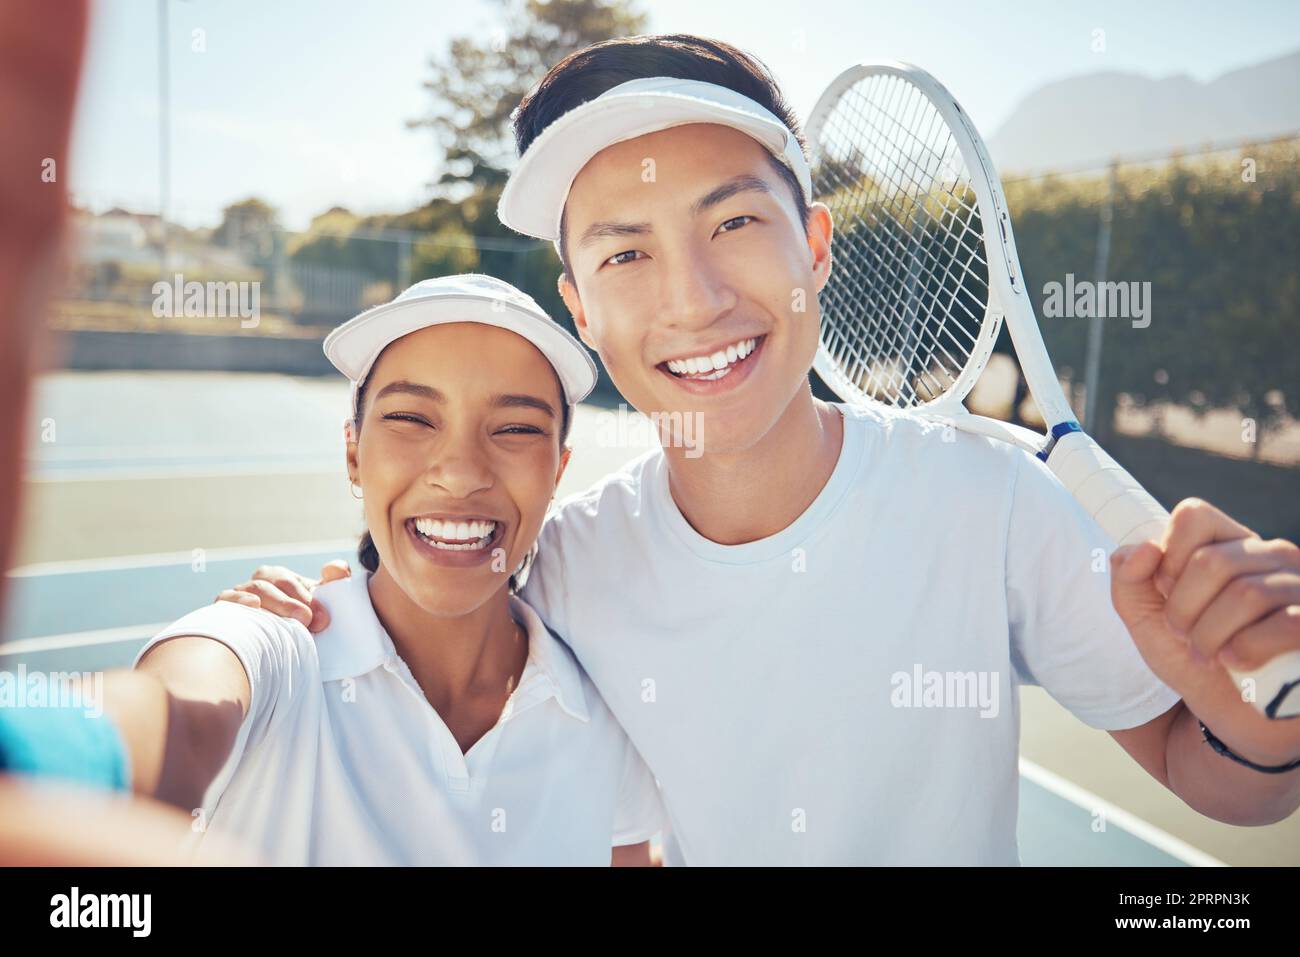 Selfie, tennis et amis avec un homme et une femme prenant une photo sur un terrain de sport après un match ou un match. Entraînement, exercice et entraînement avec un jeune homme et une jeune femme qui s'entraîne dans le sport pour la santé Banque D'Images